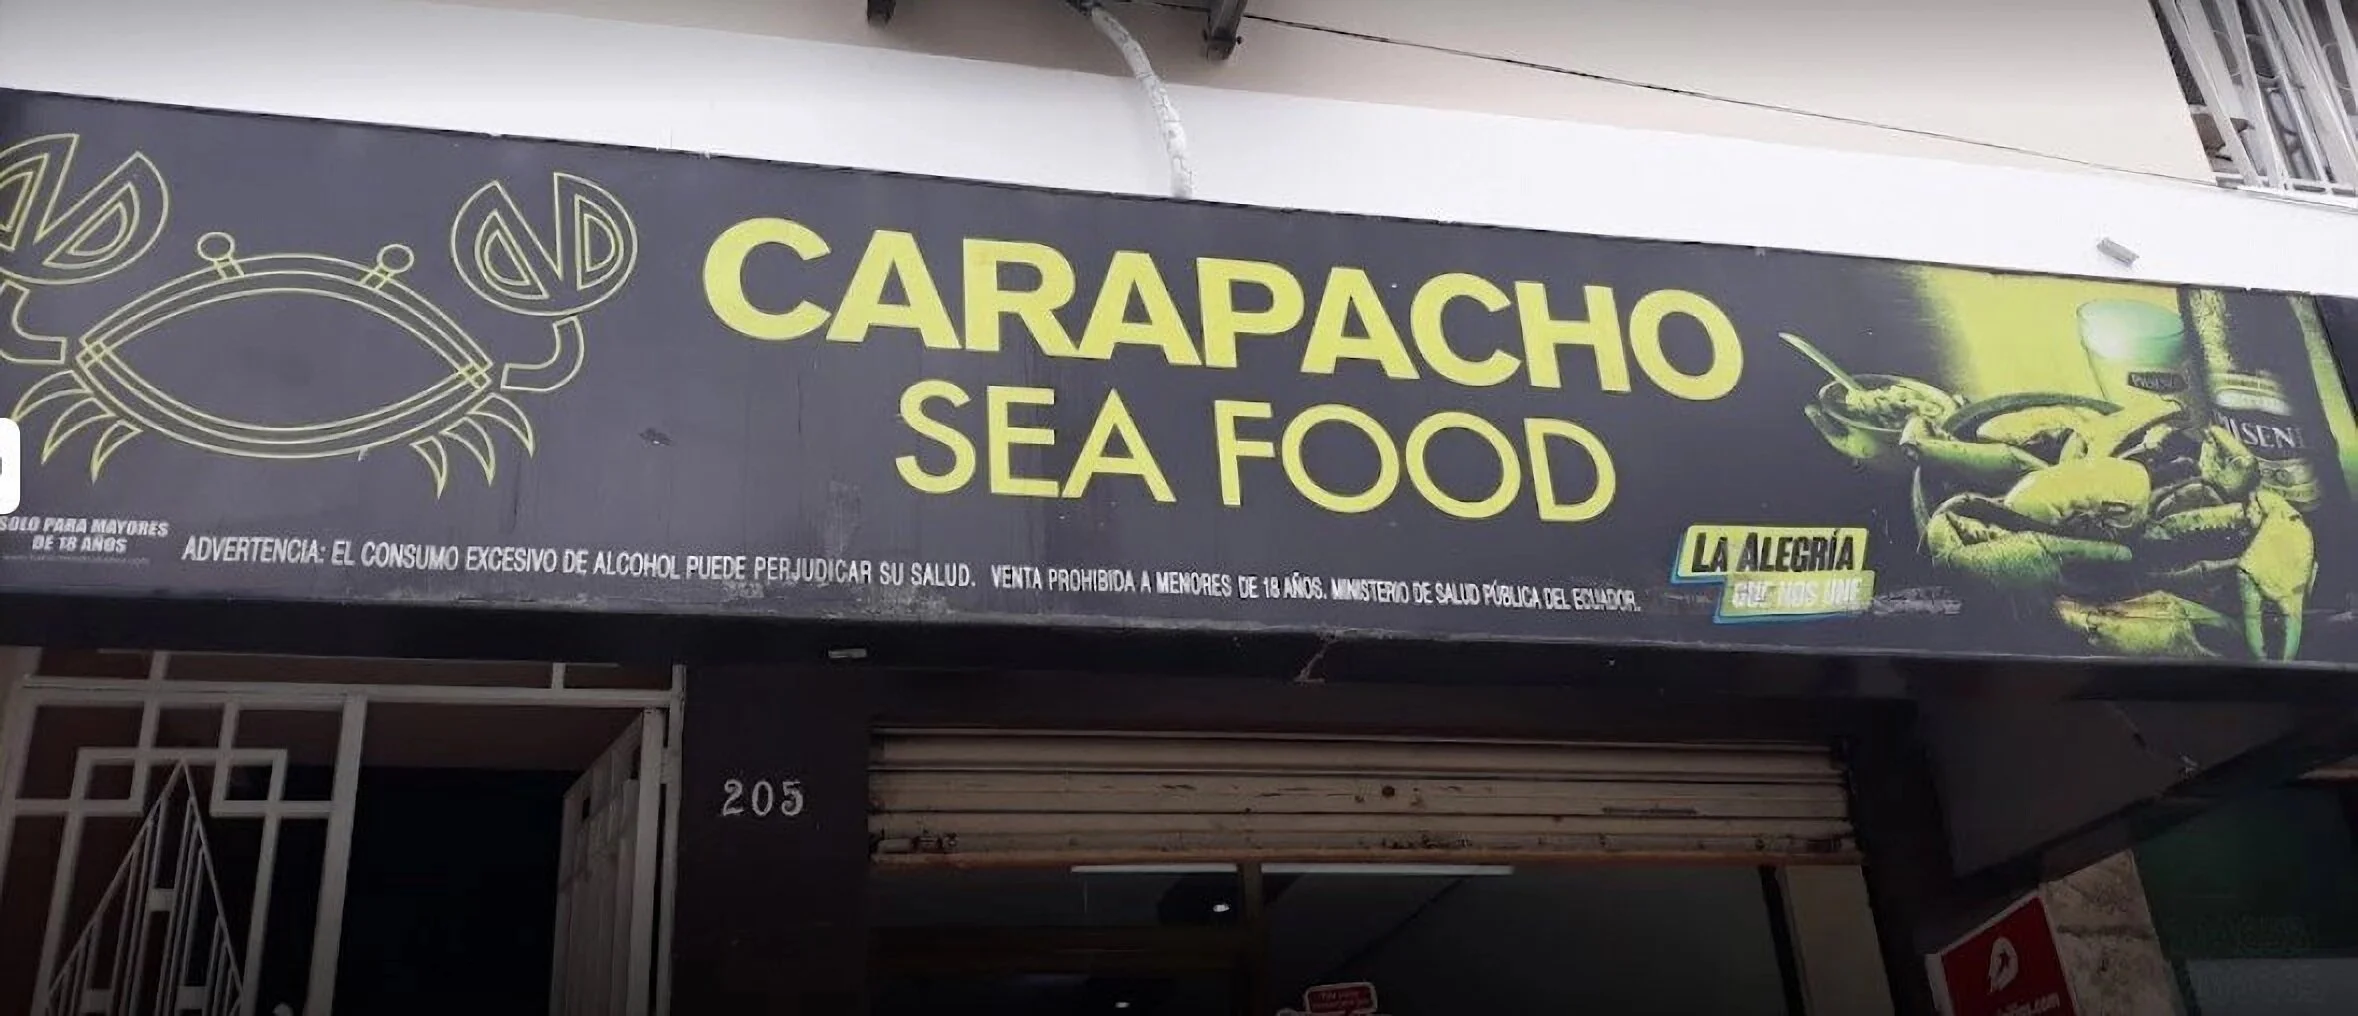 Restaurantes-carapacho-sea-food-17262